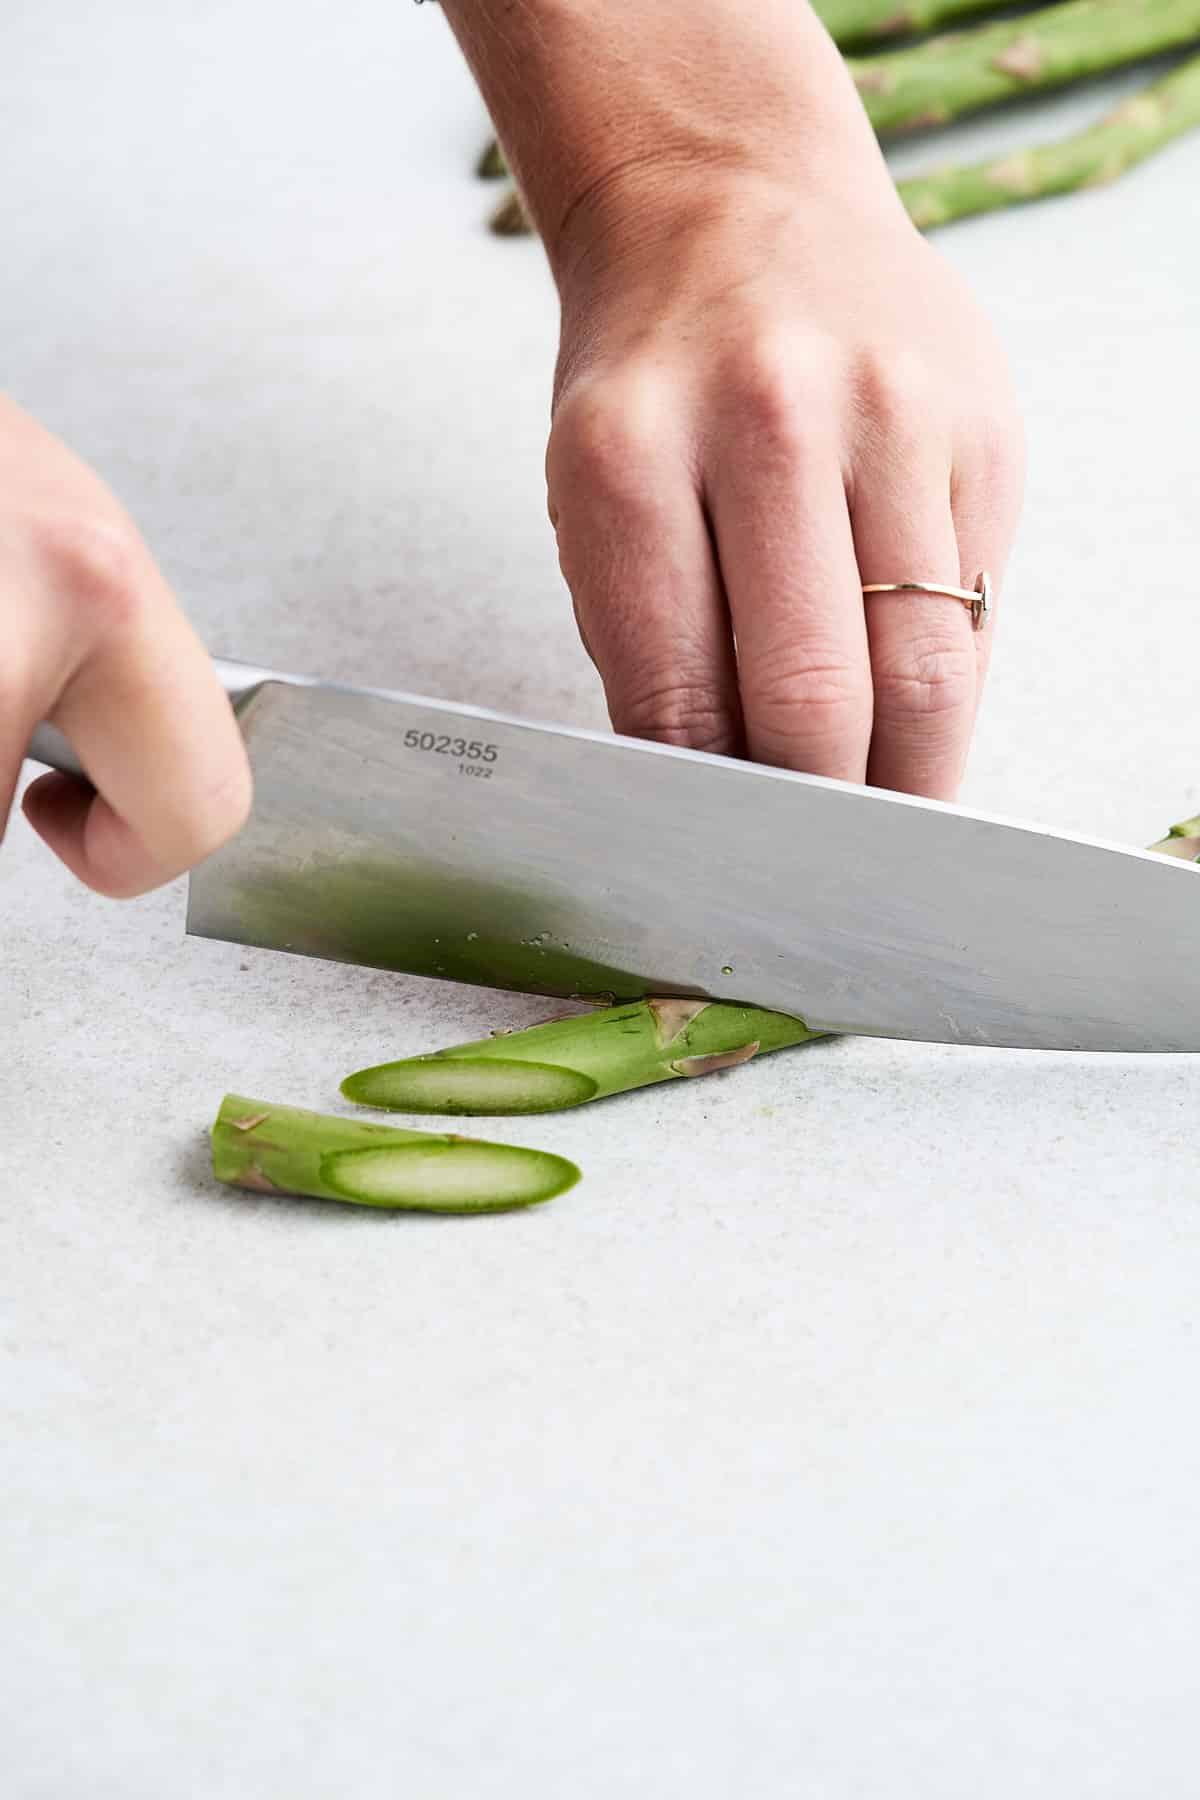 Bias cutting asparagus.